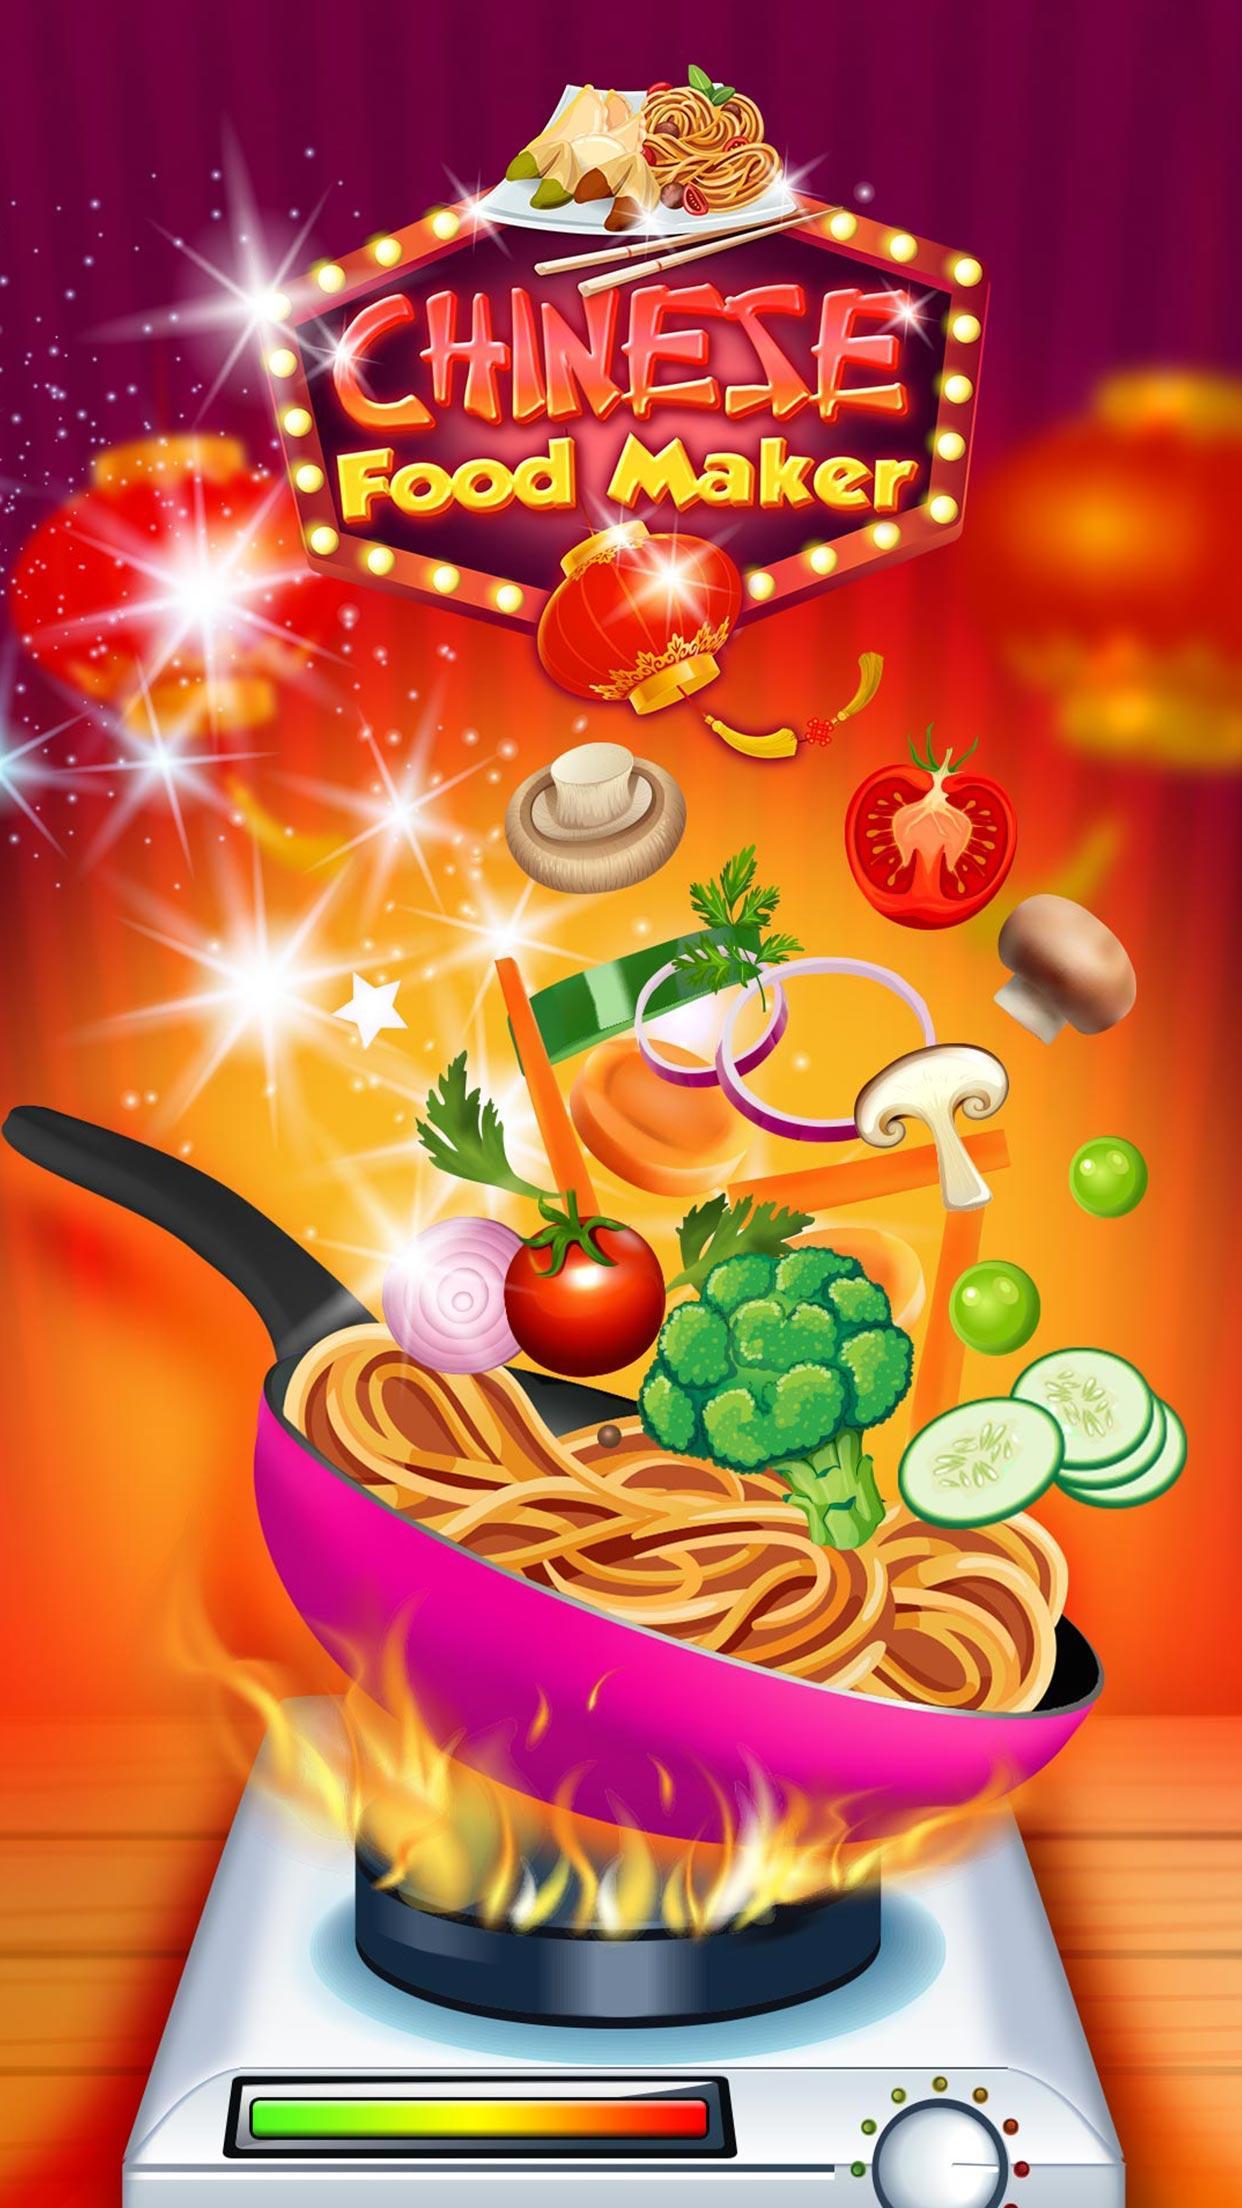 الطعام الصيني - العاب طبخ الآسيوية for Android - APK Download